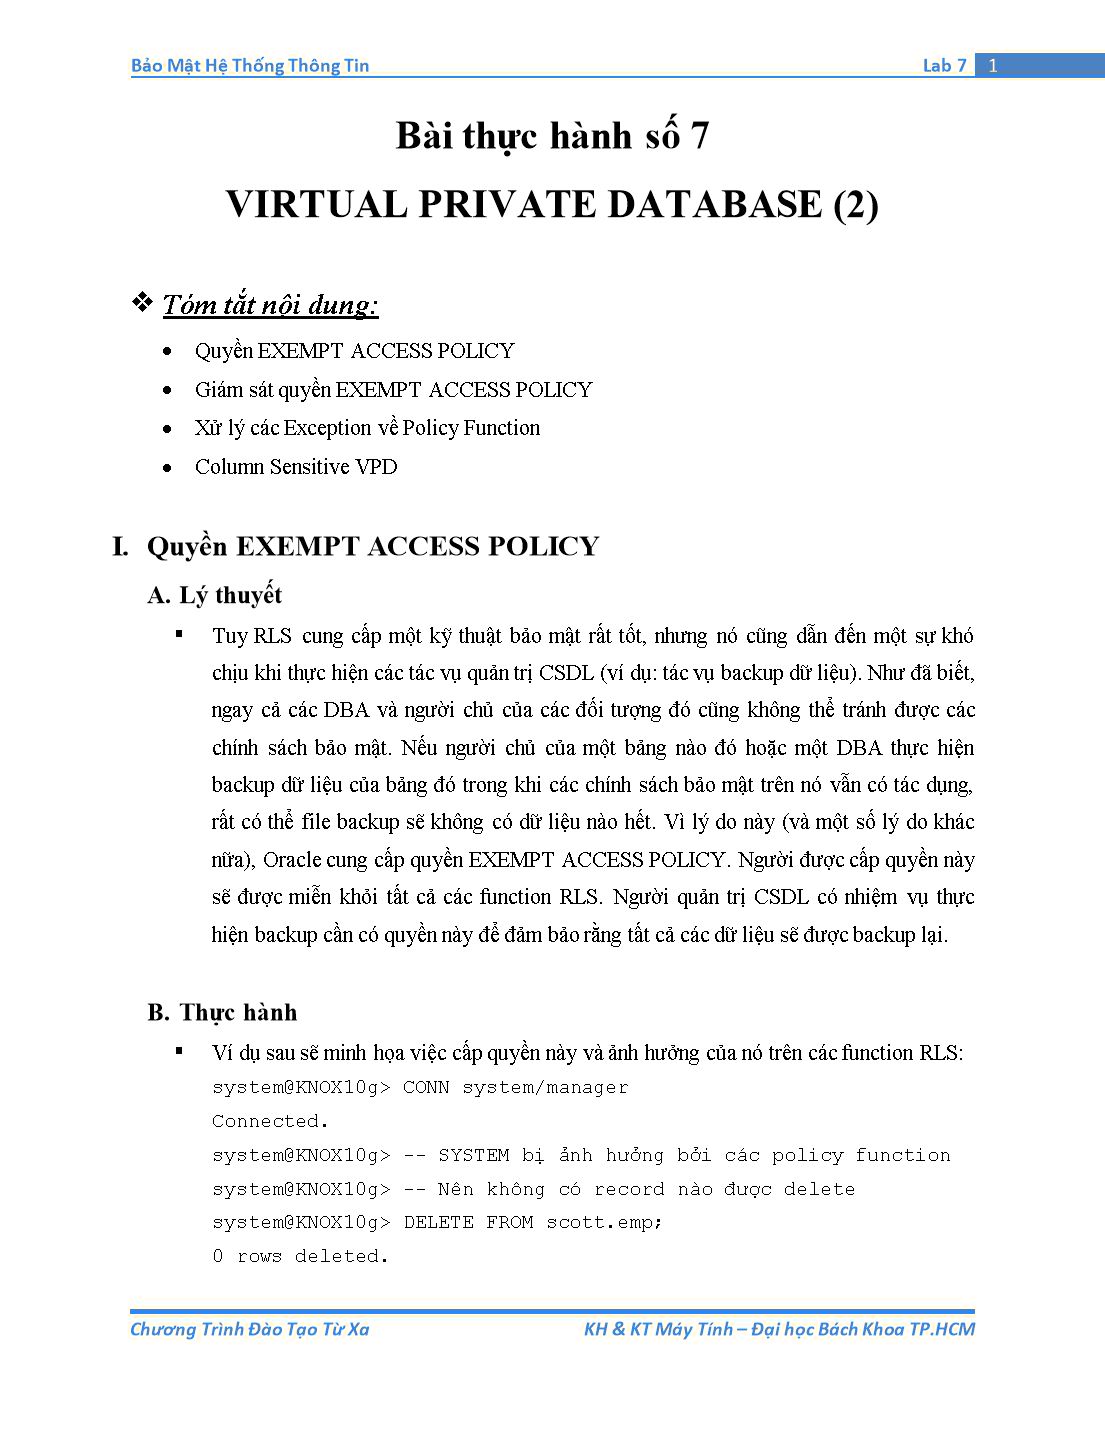 Tài liệu thực hành Bảo mật hệ thống thông tin - Bài thực hành số 7: Virtual Private Database (Phần 2) trang 1